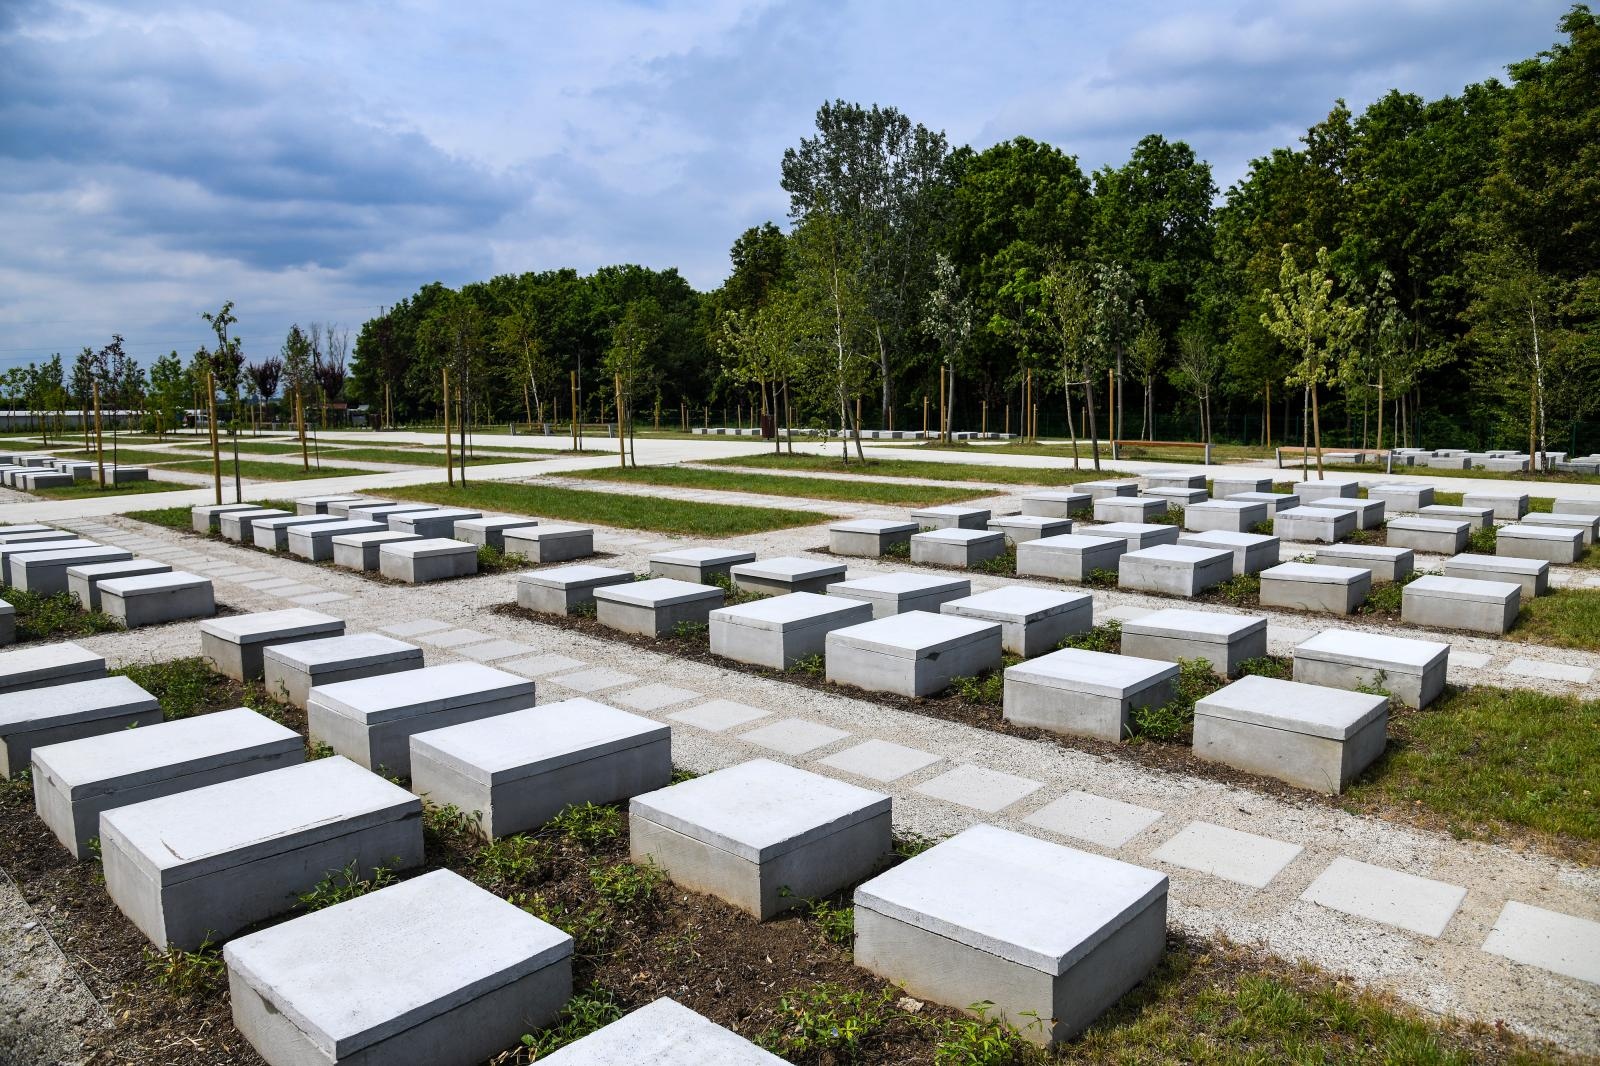 Kapacitet groblja ukupno je 10.000 ukopnih mjesta.